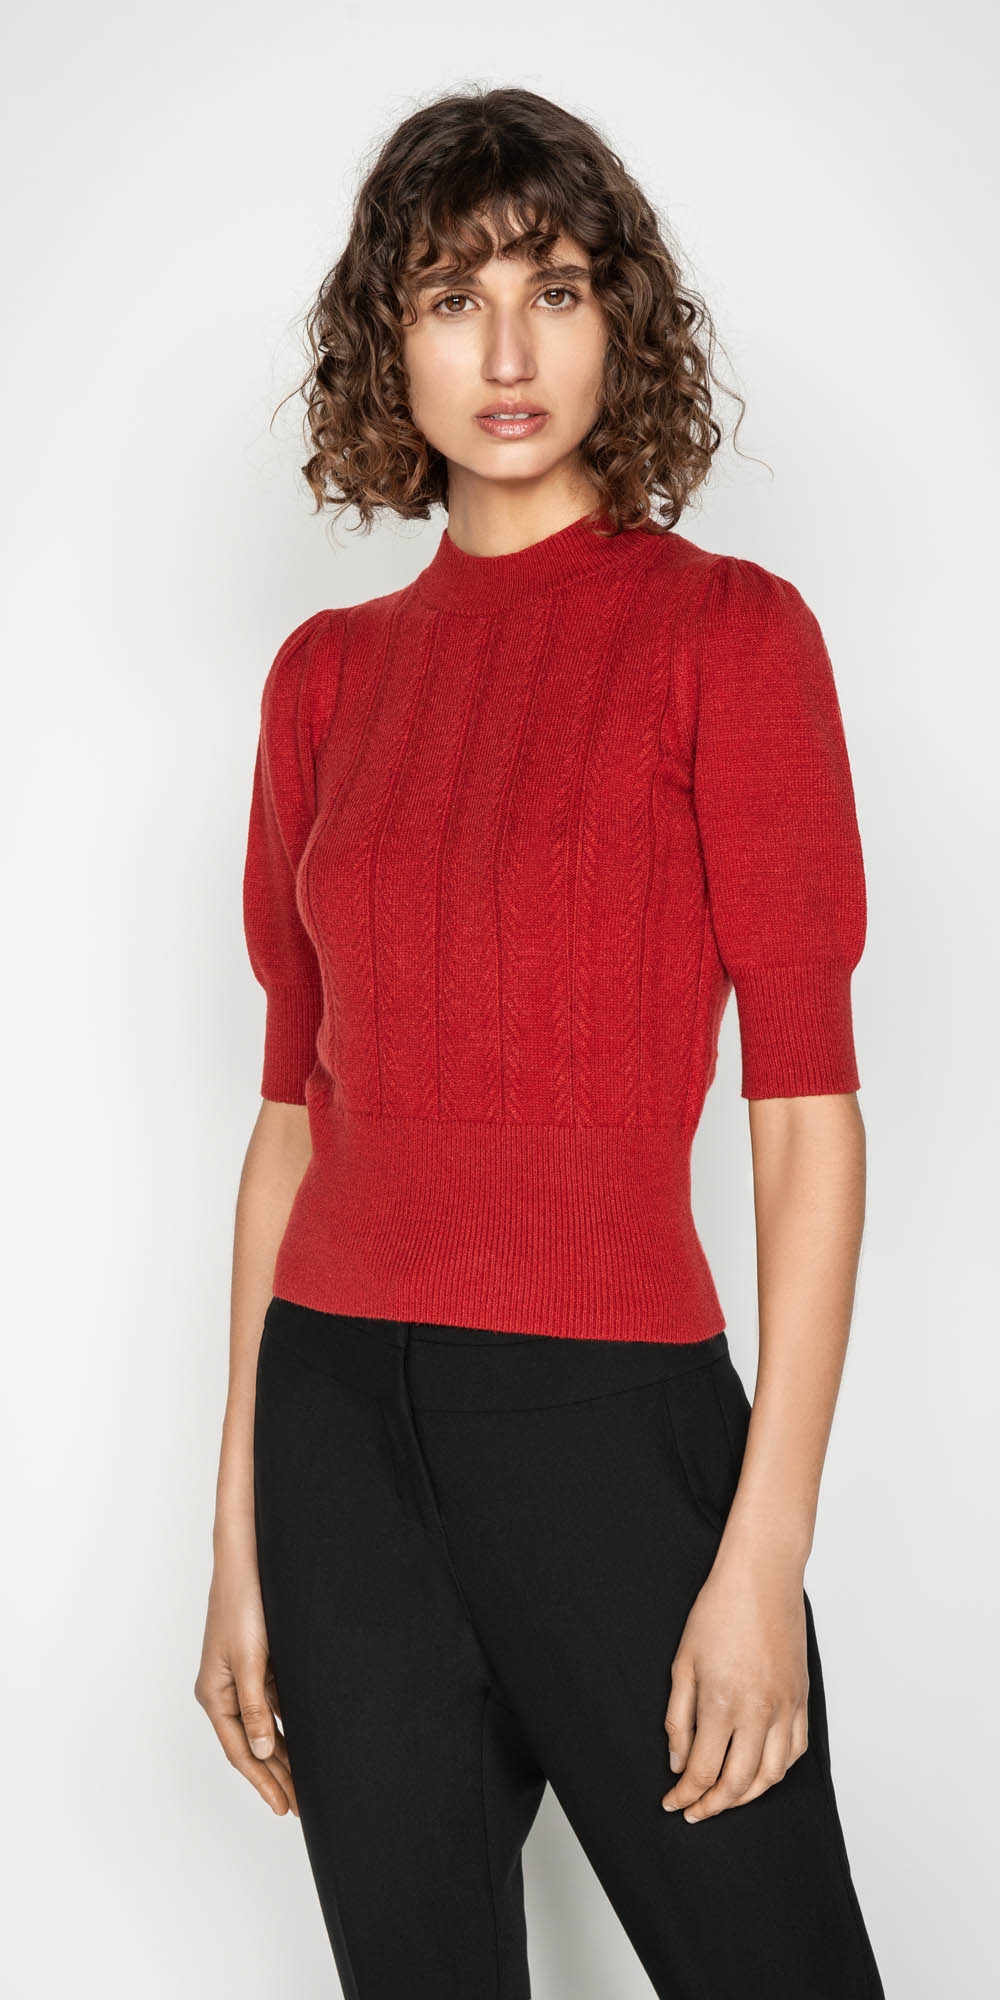 Herringbone Rib Short Sleeve Sweater | Buy Knitwear Online - Cue